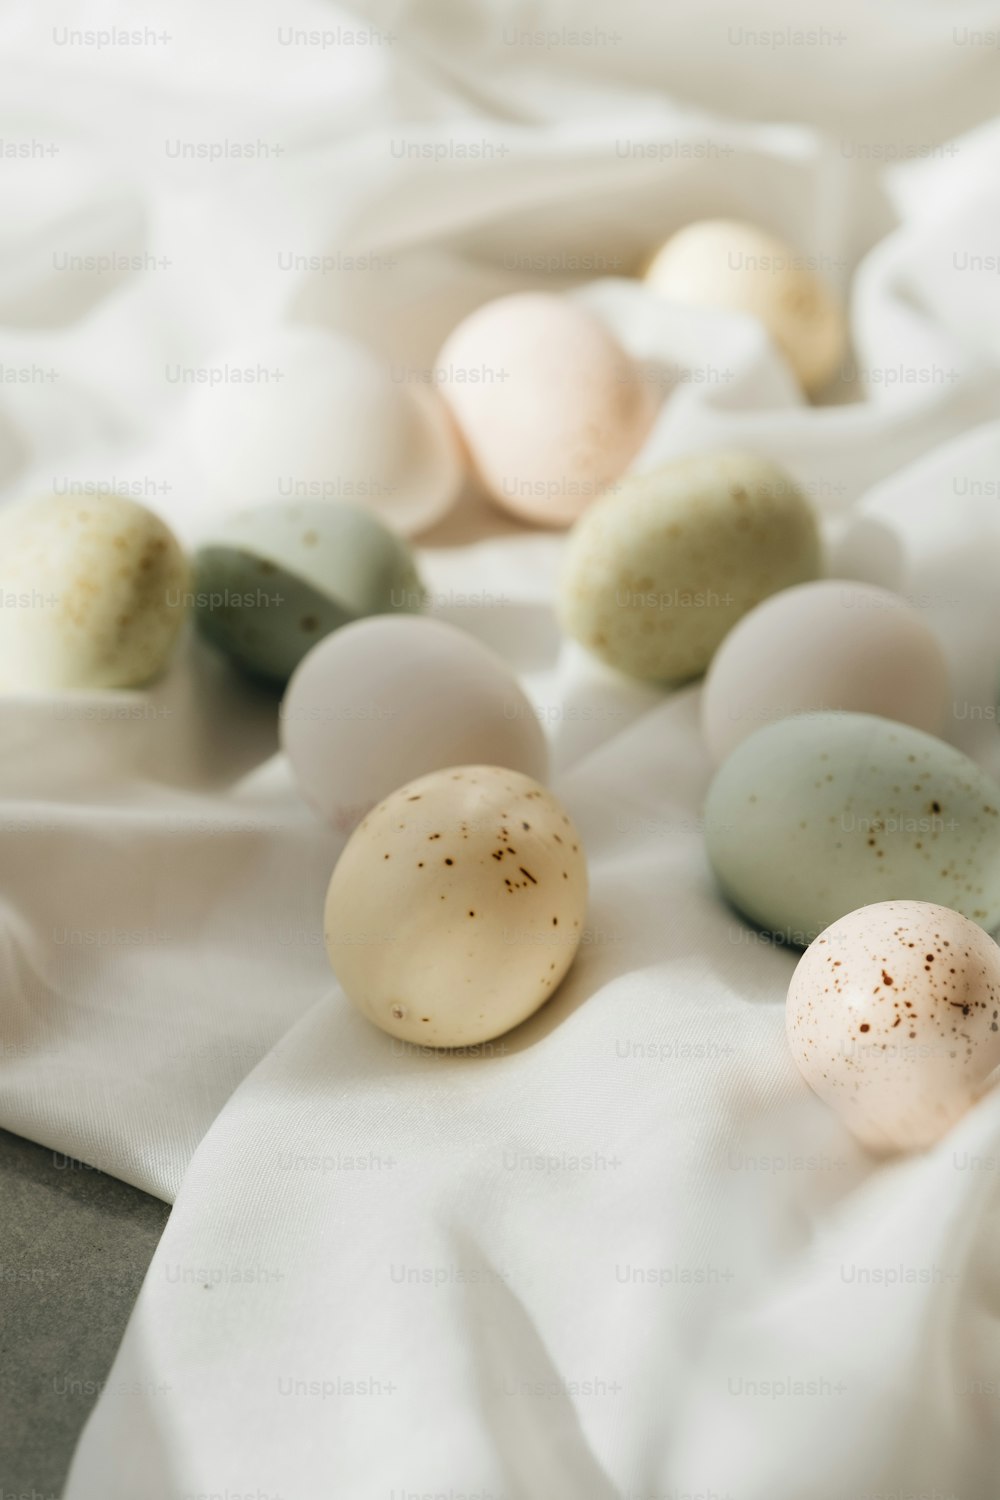 Un primer plano de un manojo de huevos en una cama